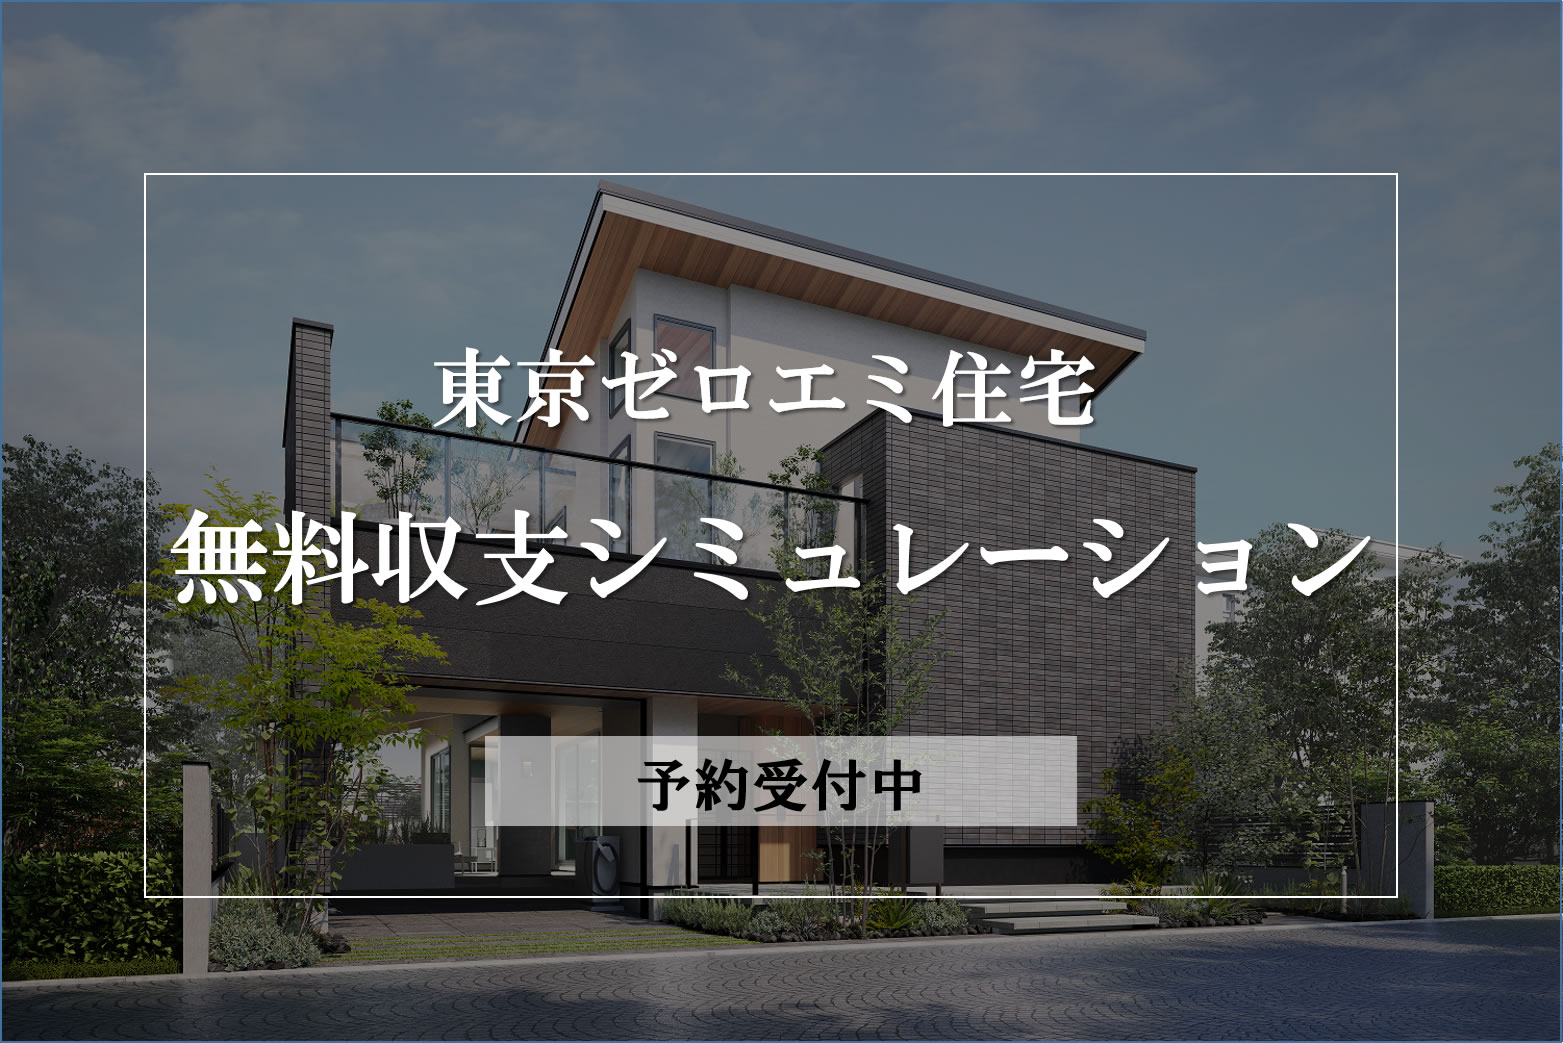 【東京ゼロエミ住宅】無料収支シミュレーション